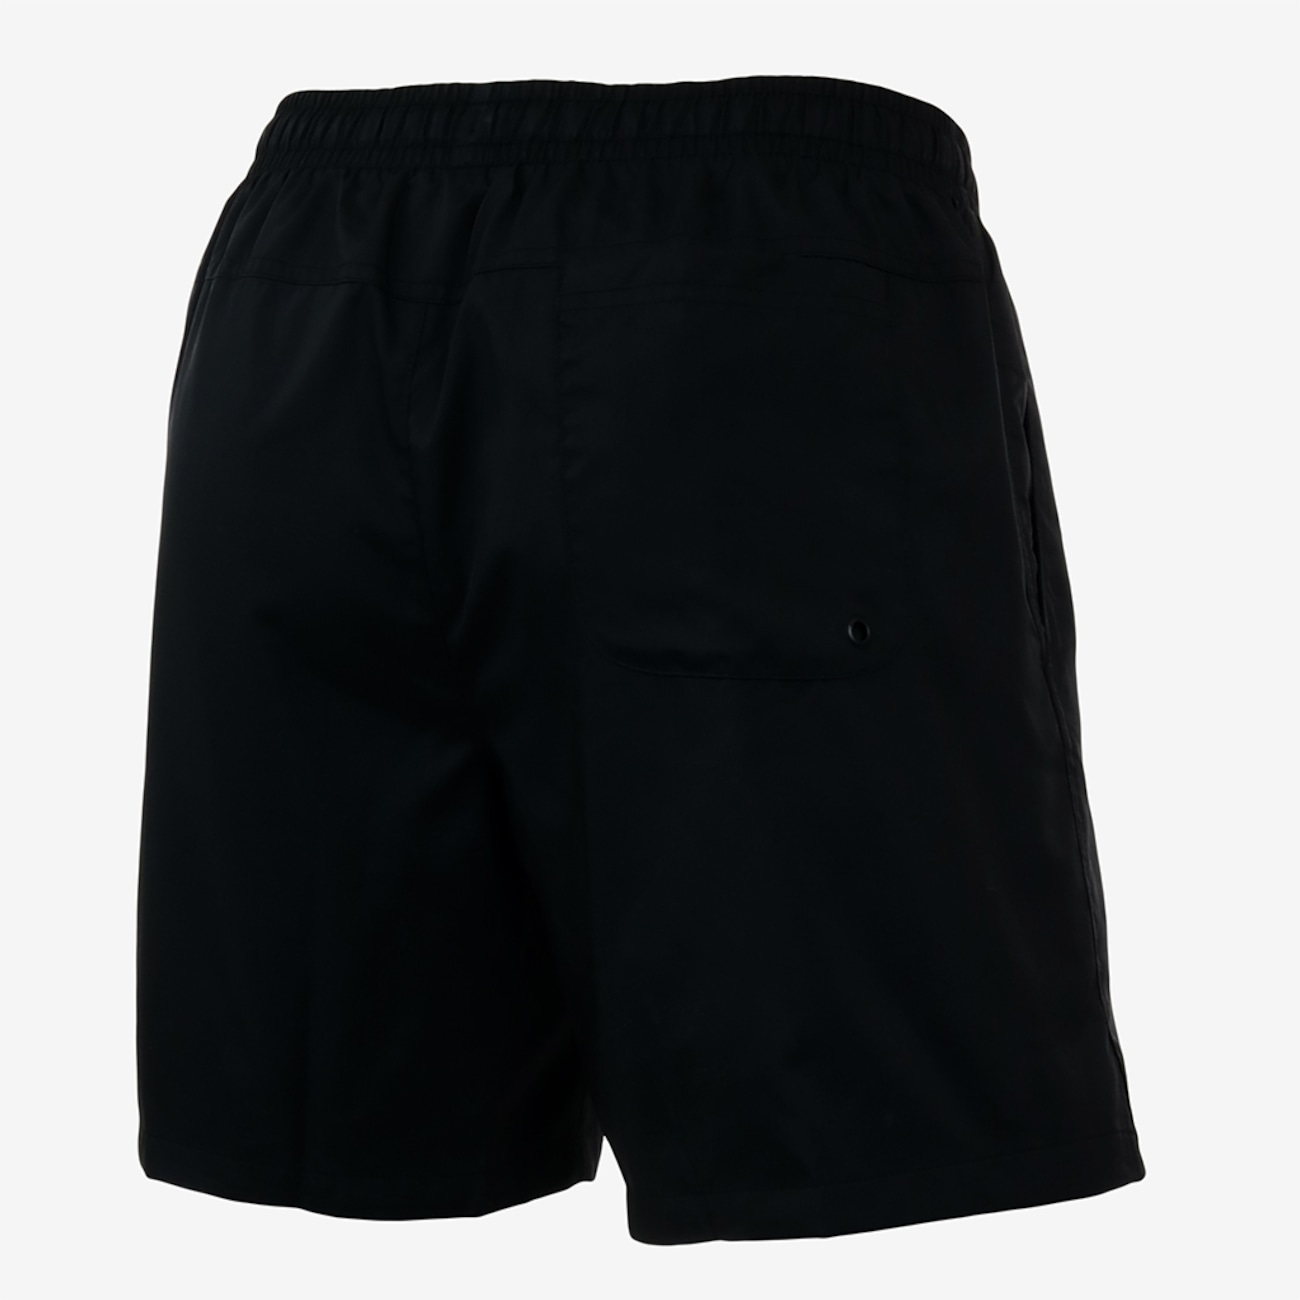 Shorts Nike Sportswear Flow Masculino  - Foto 2